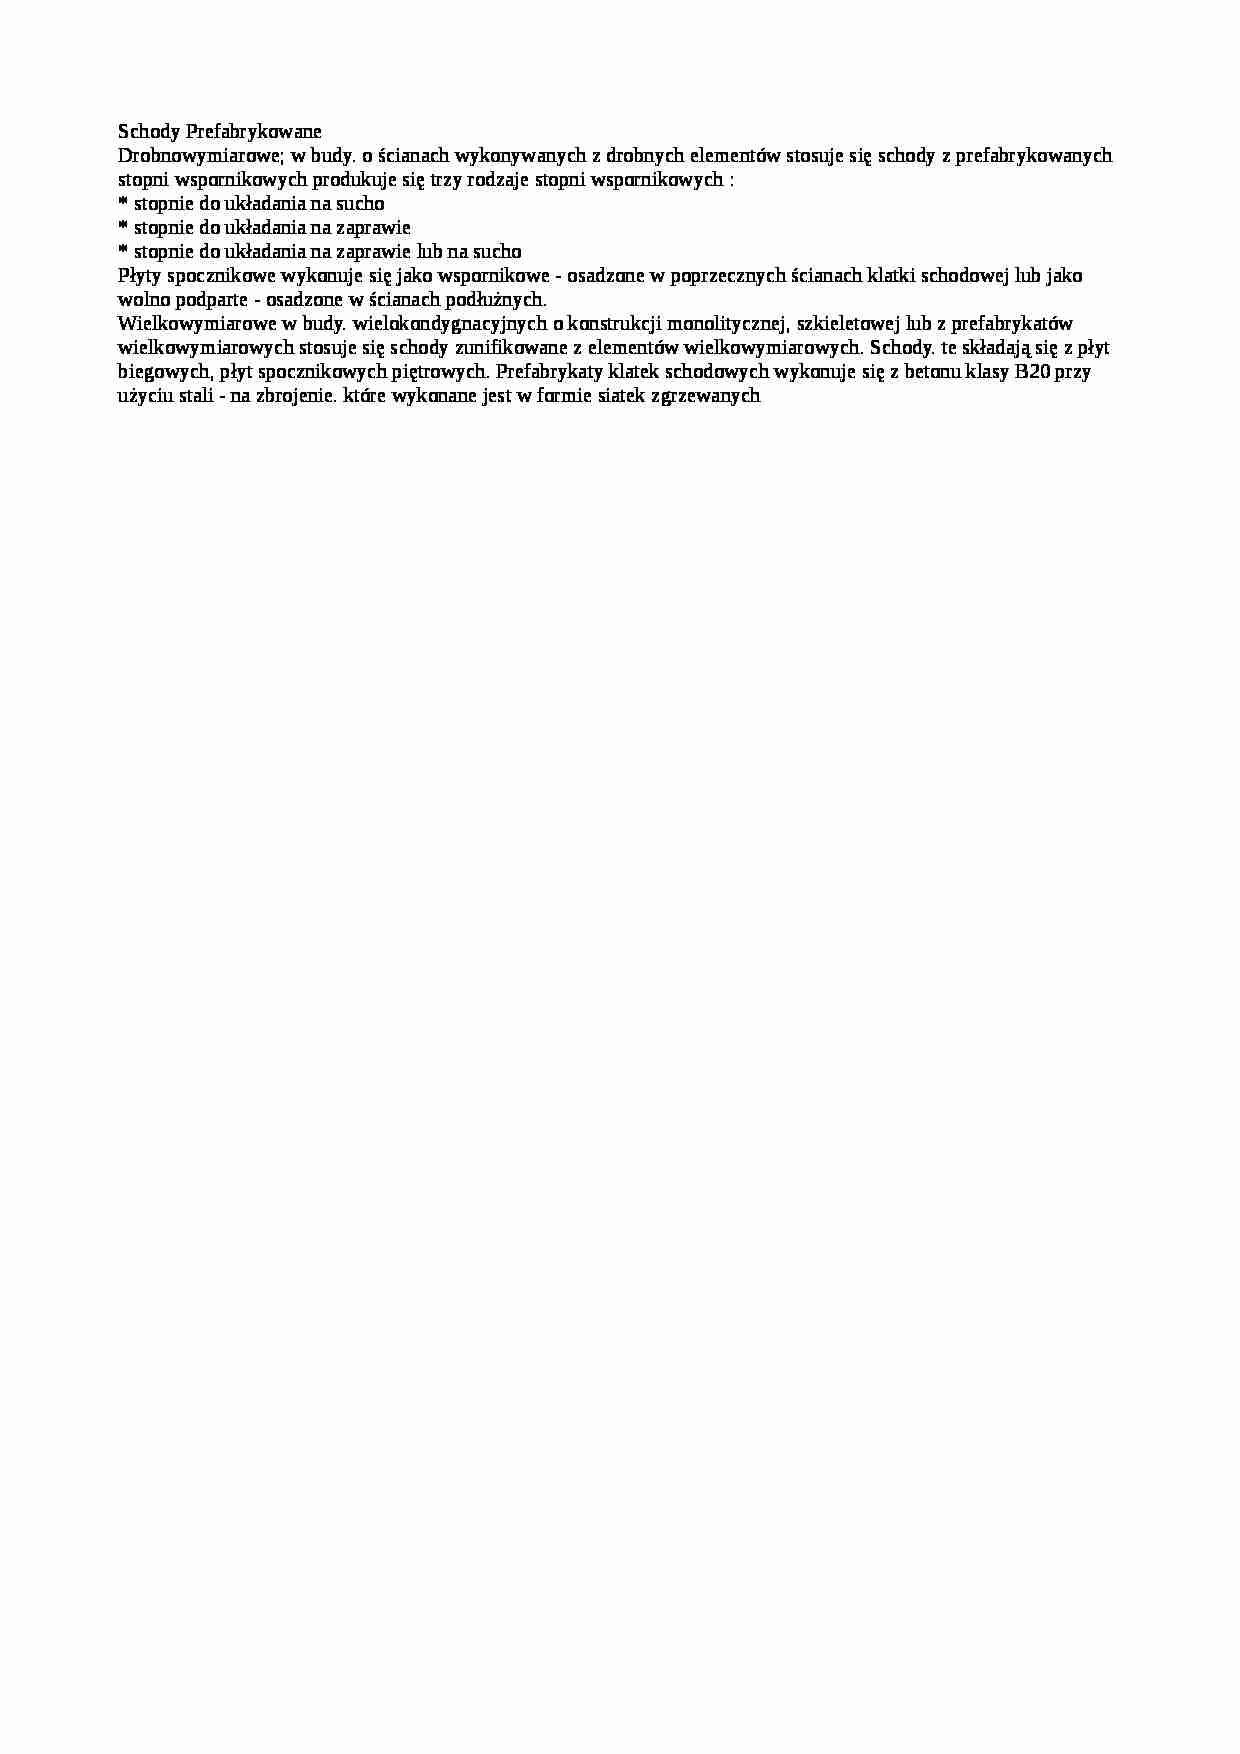 Schody prefabrykowane-opracowanie - strona 1